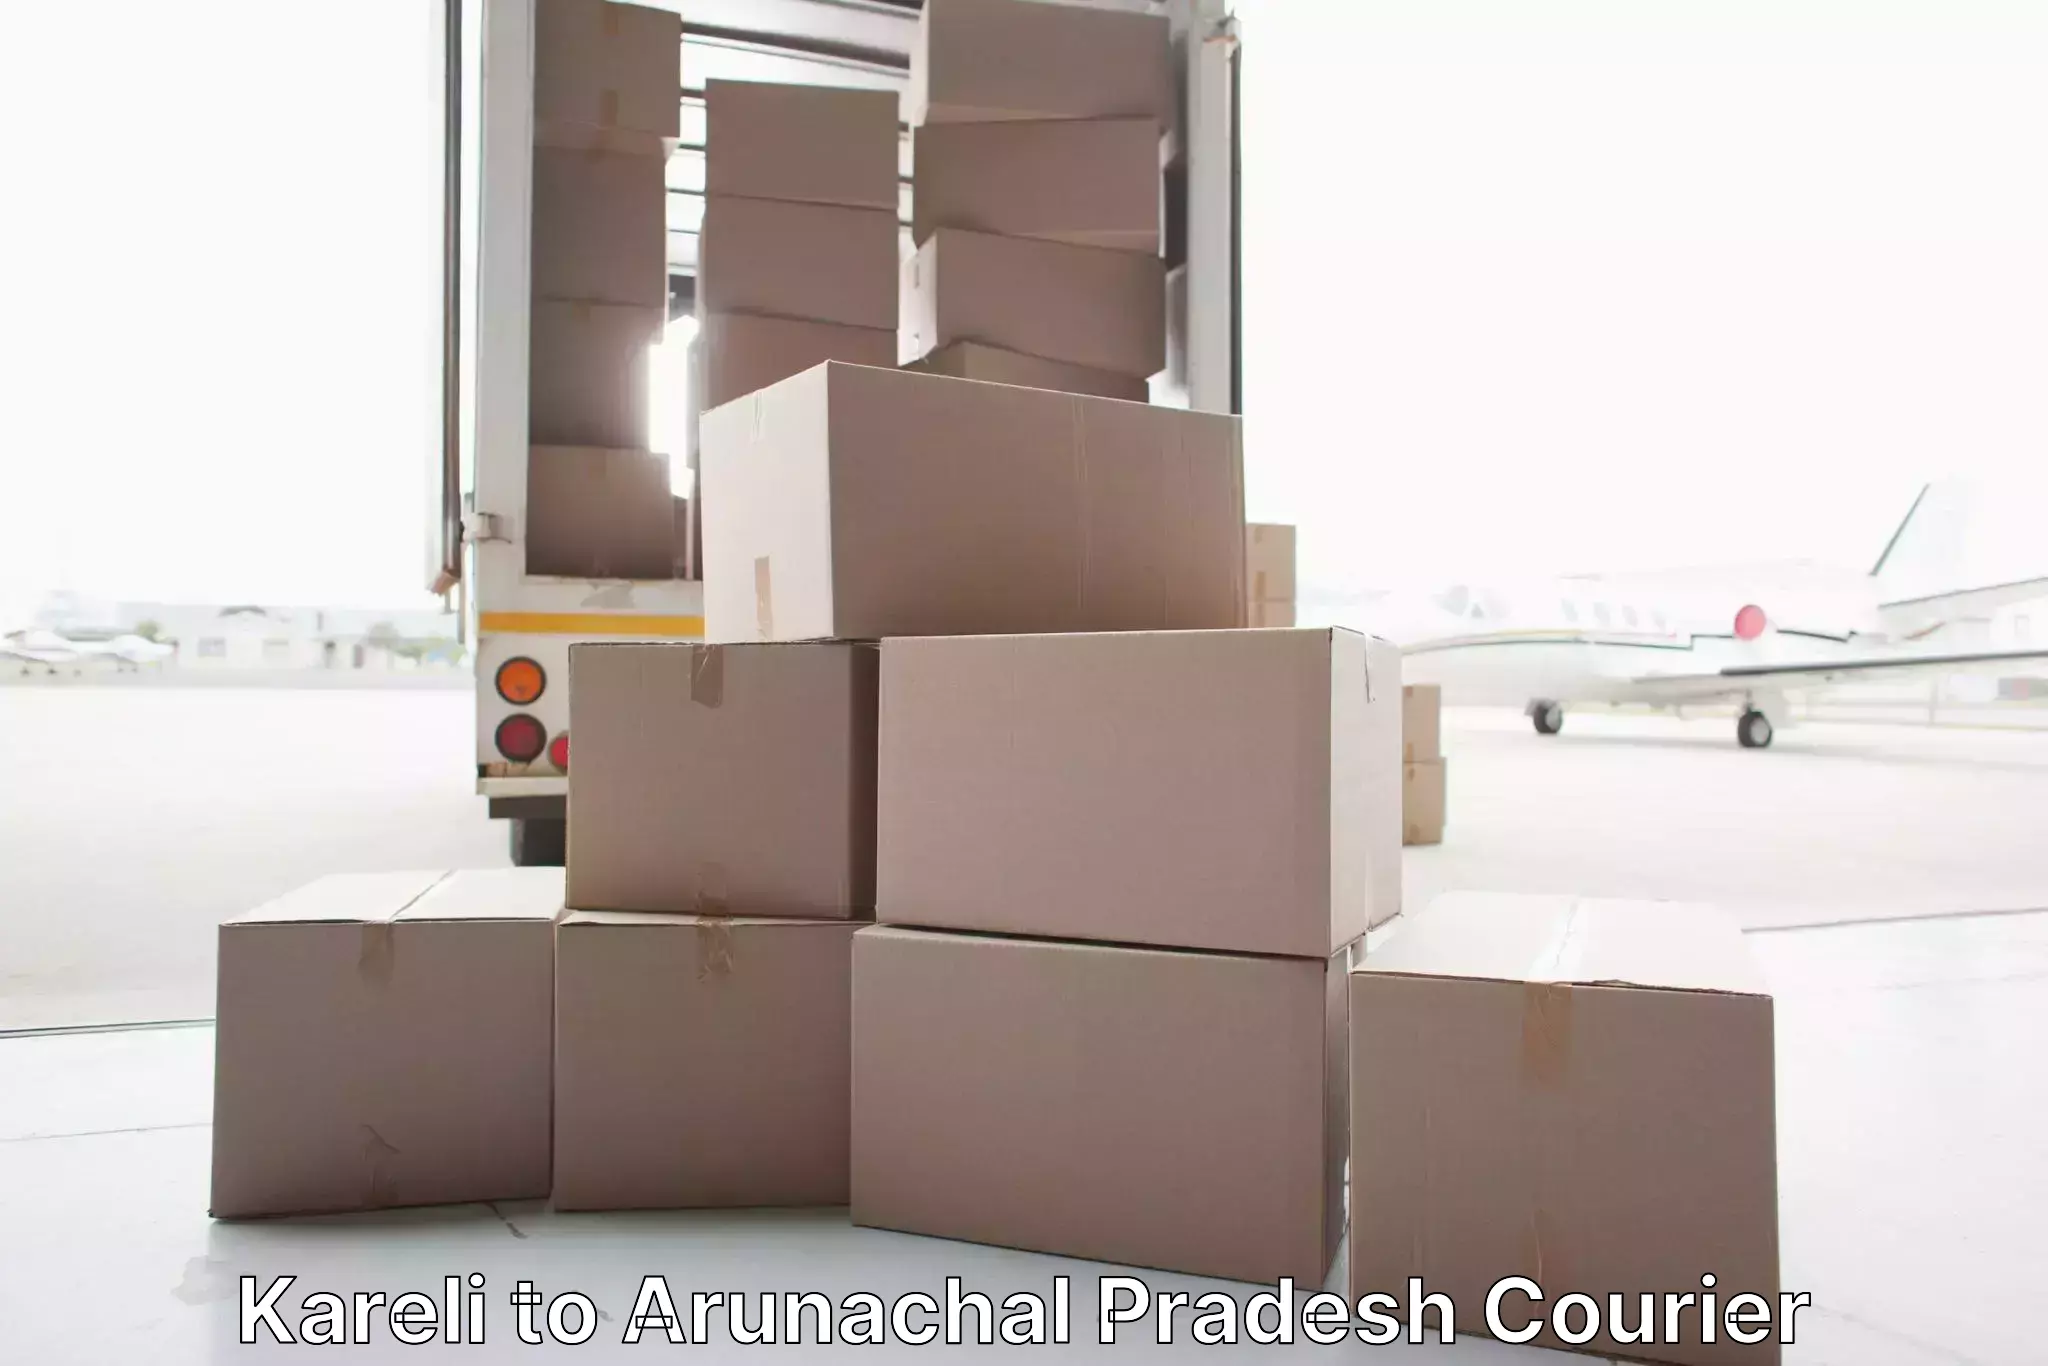 Furniture transport experts in Kareli to Arunachal Pradesh